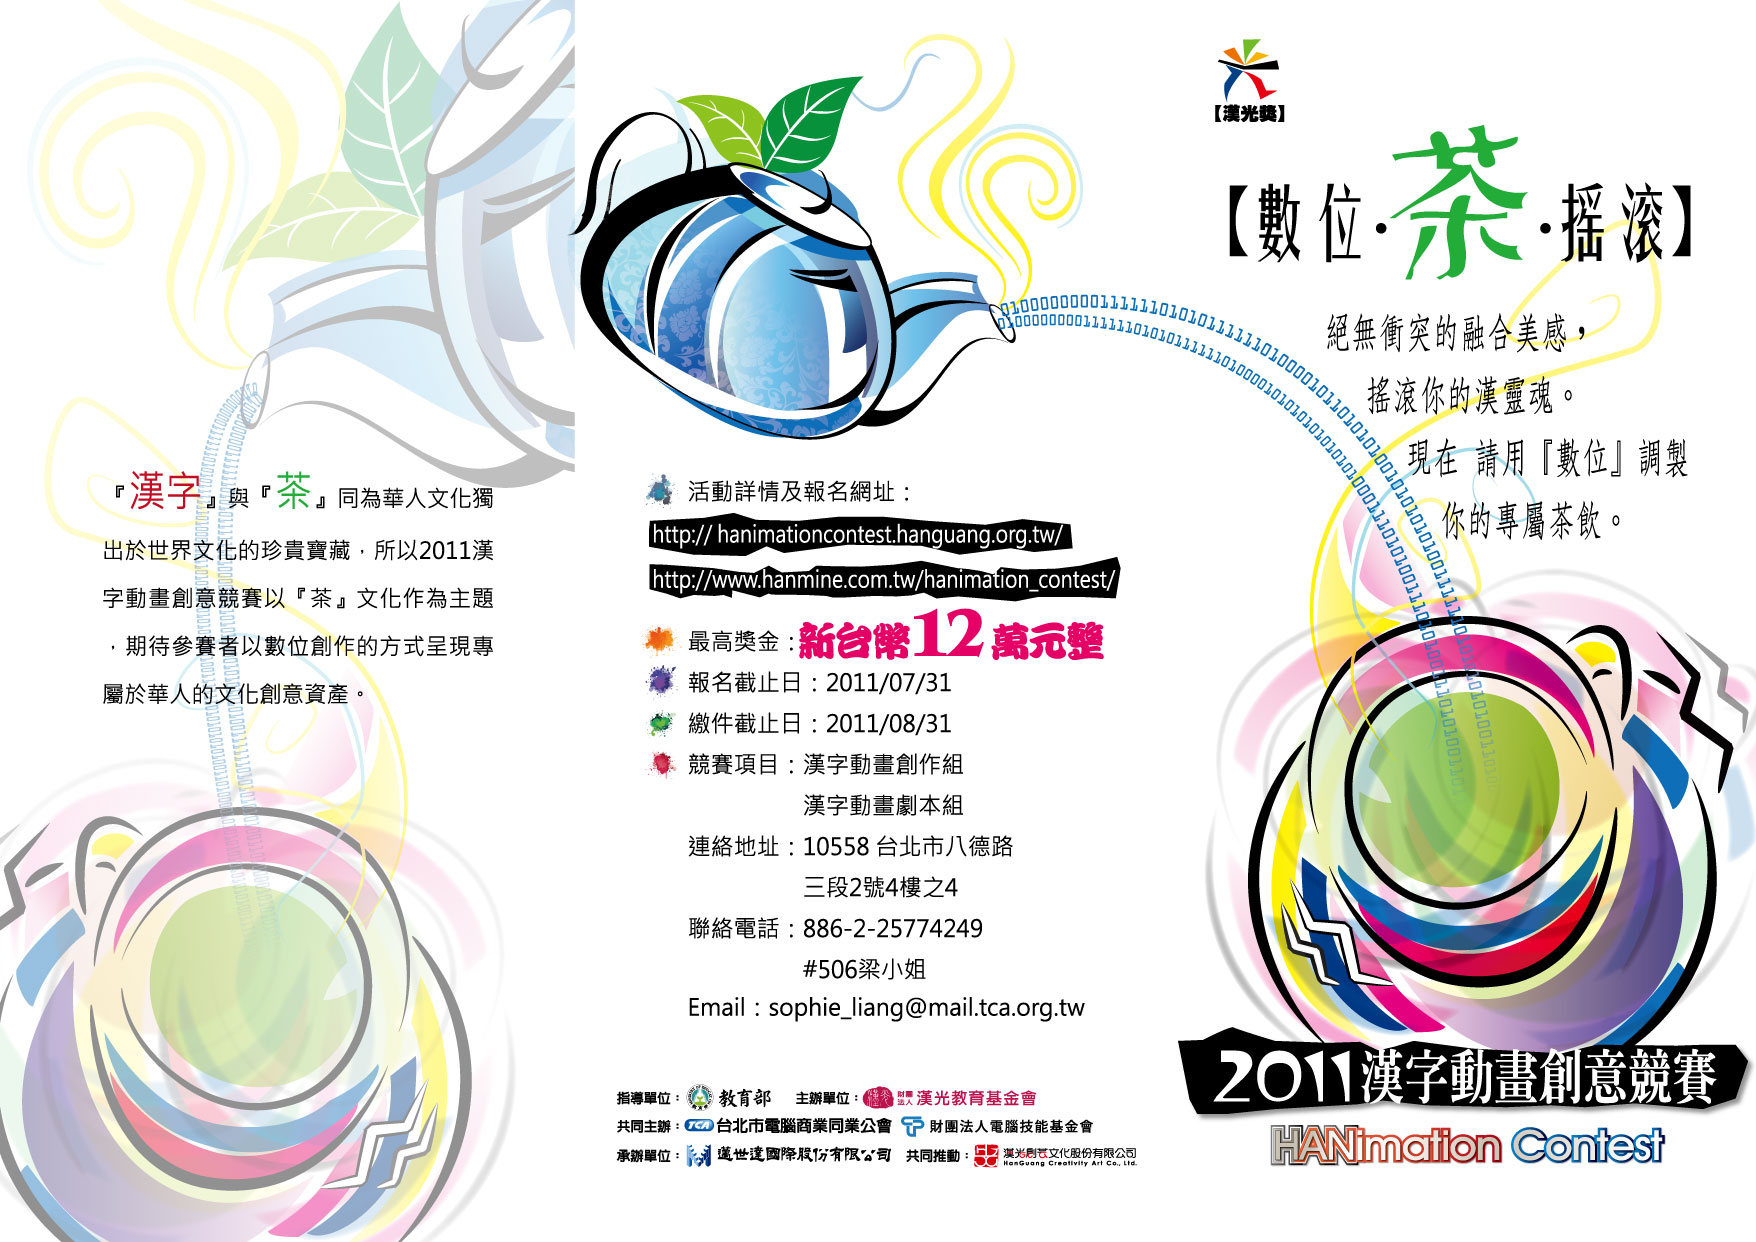 2011漢字動畫比賽DM-012011漢字動畫比賽DMok改輸出示意-01.jpg